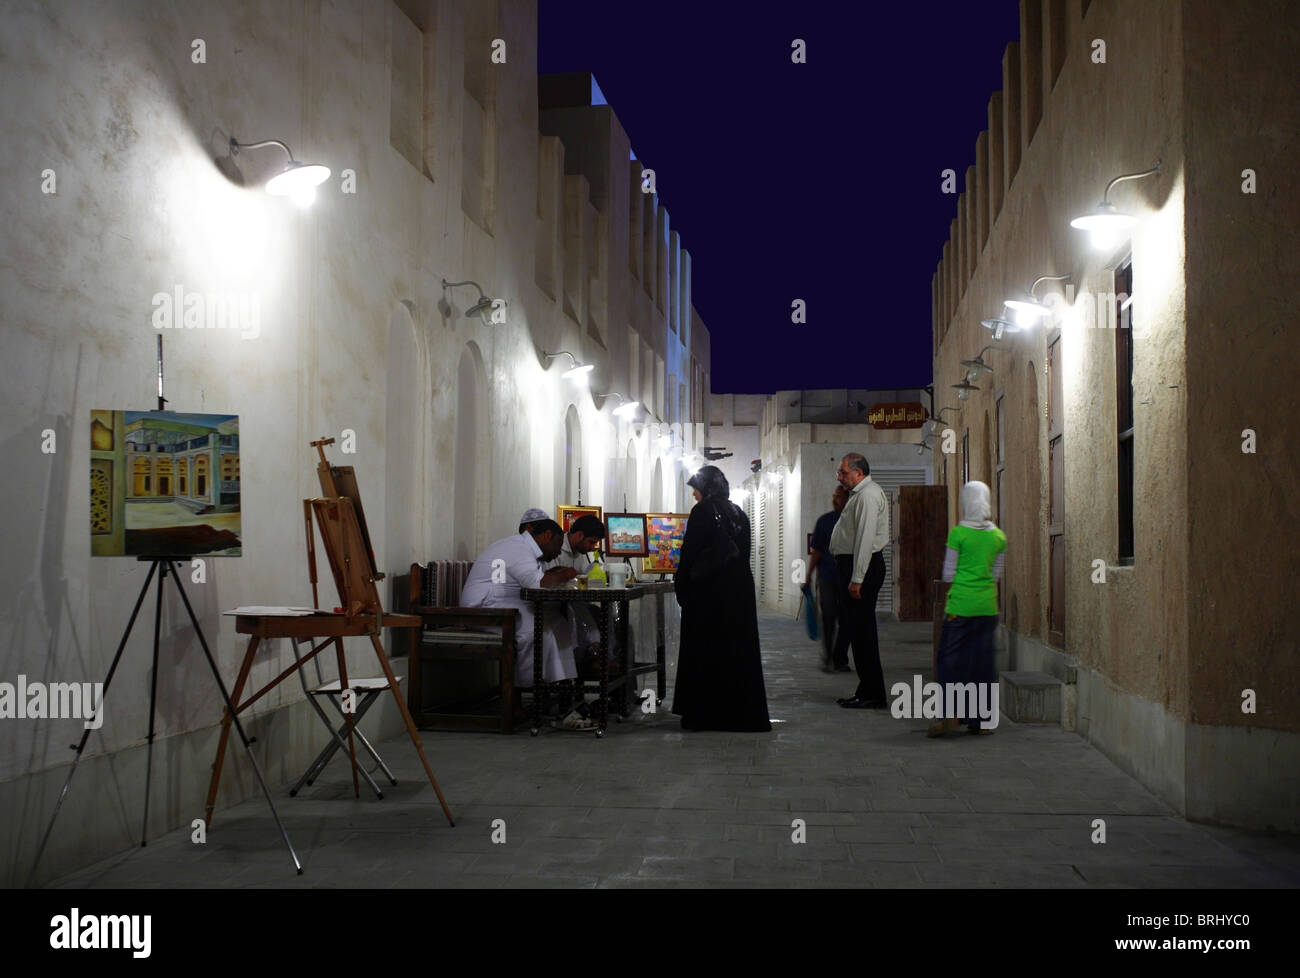 Gli artisti mostrano il loro lavoro una sera in un vicolo al Souq Waqif, Doha, Qatar. Foto Stock